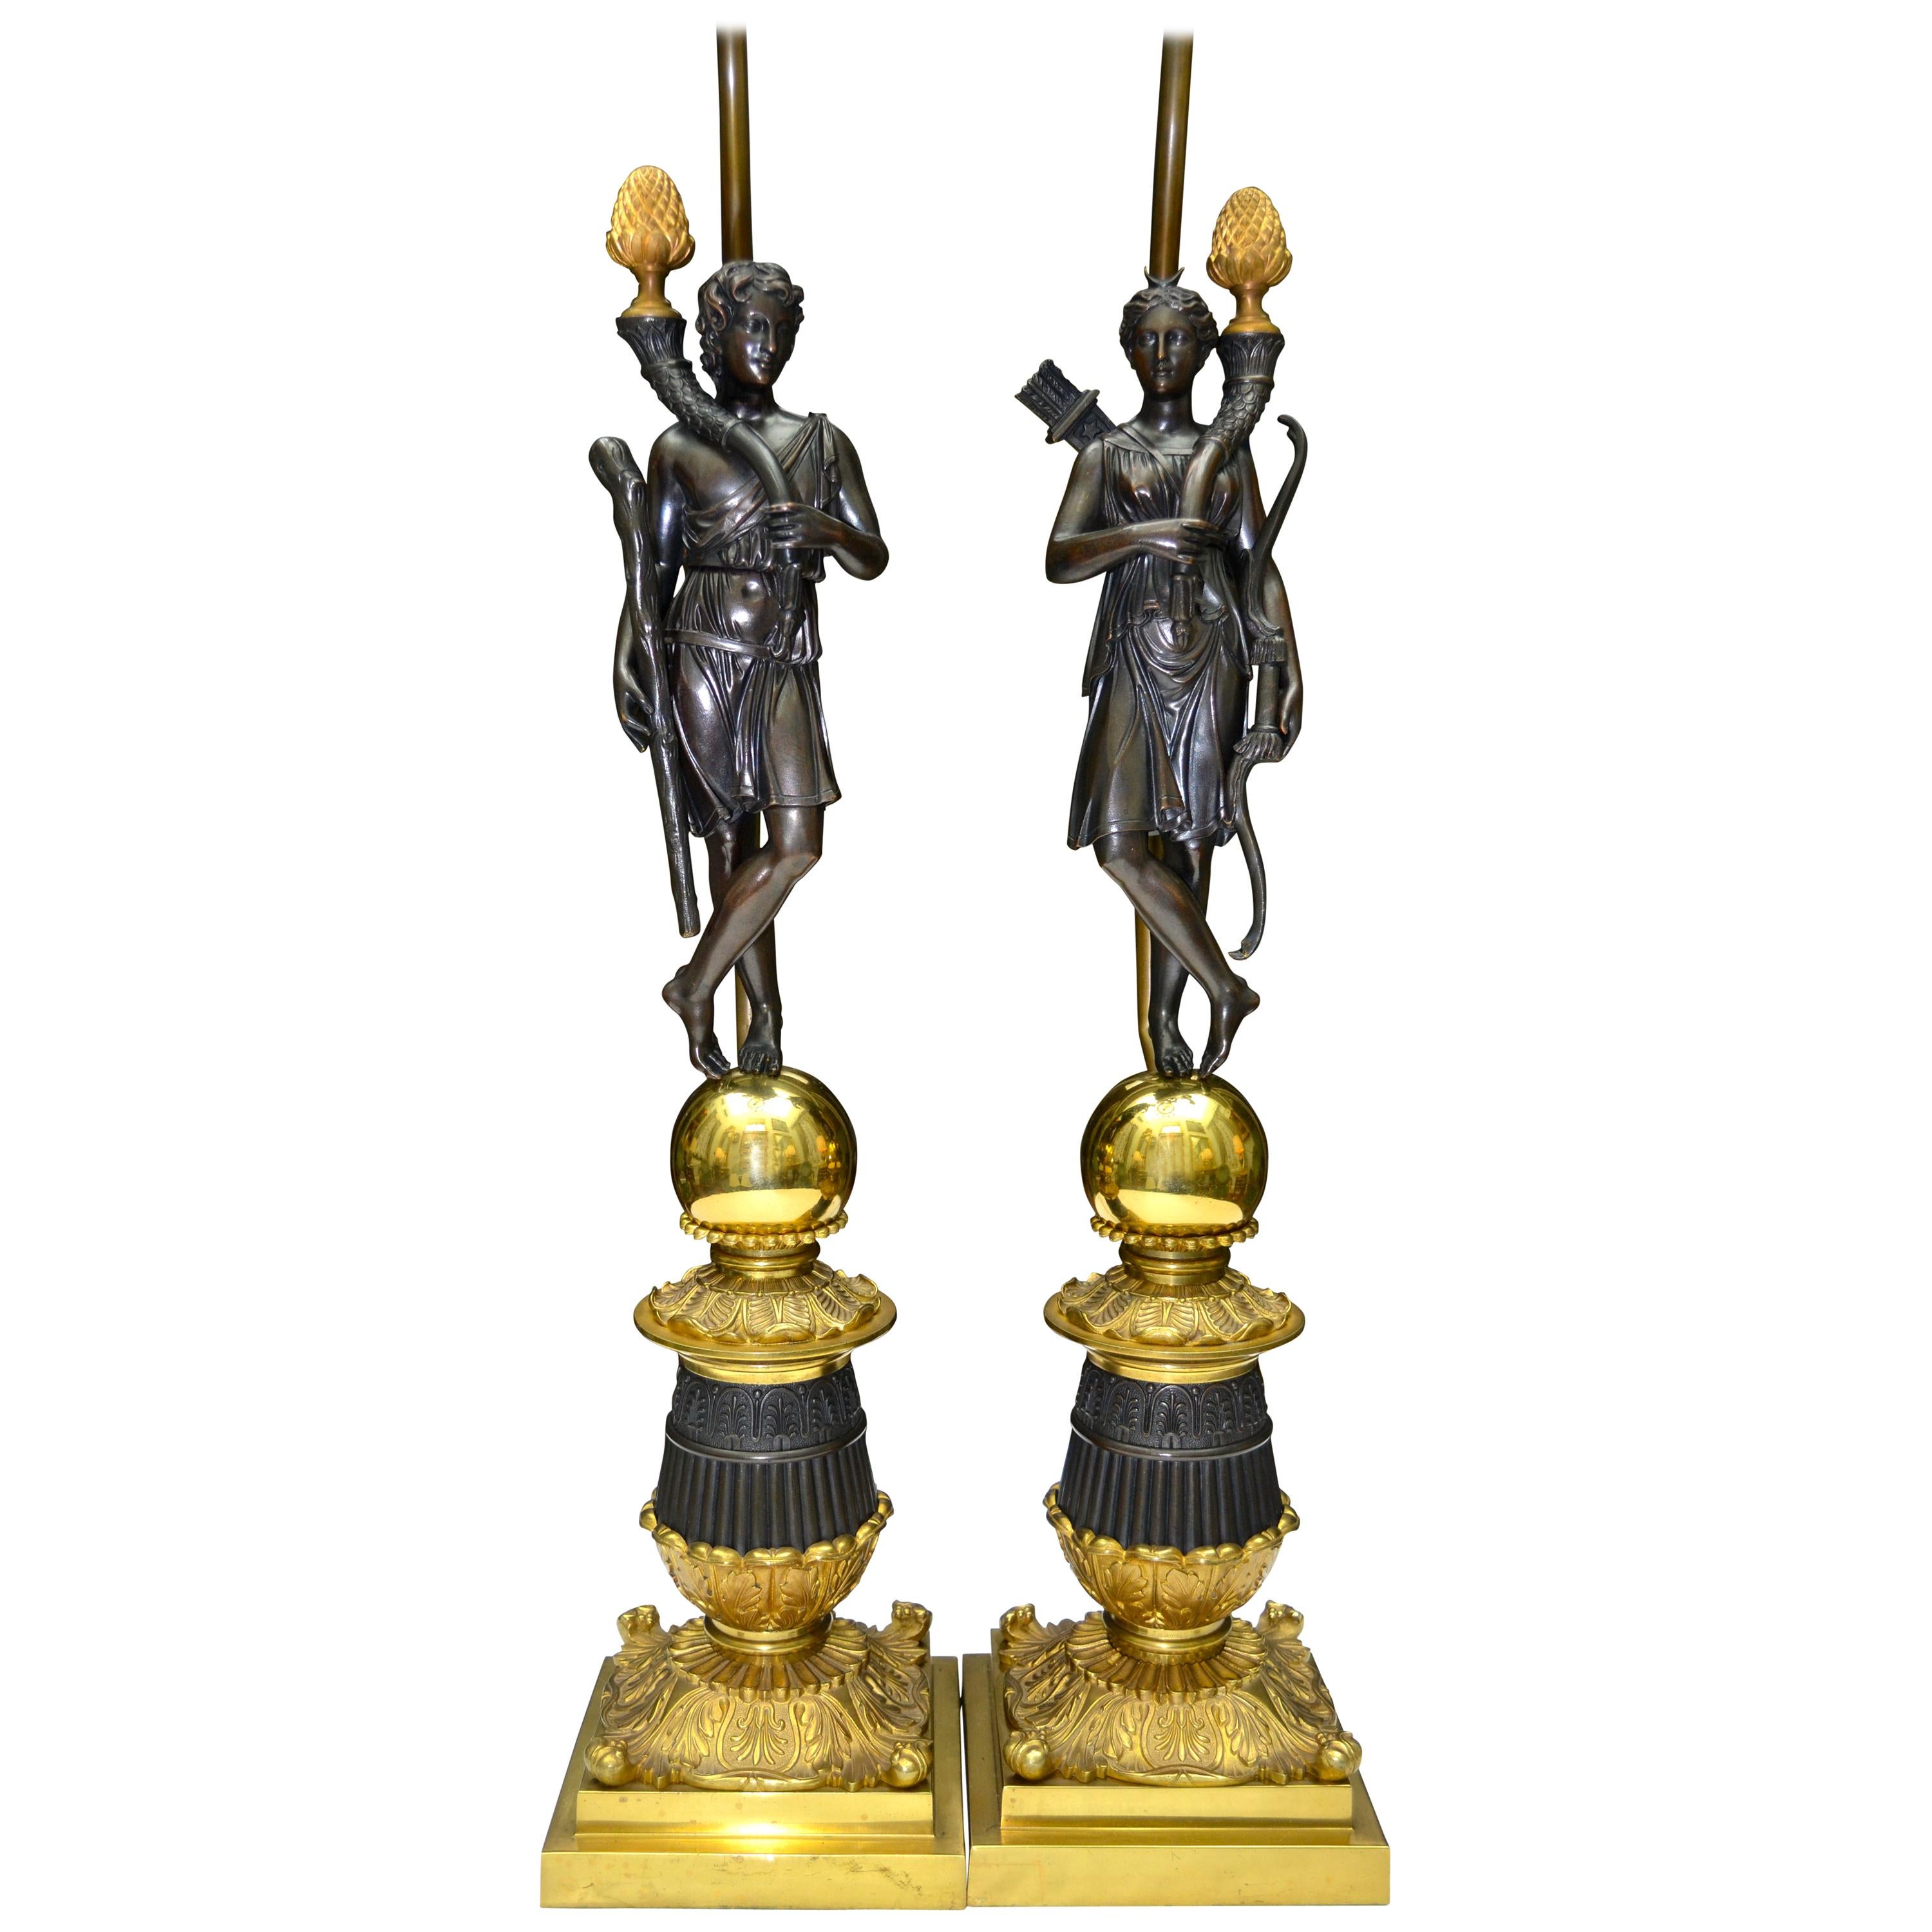 Paire de pieds de lampes figuratifs de la période de restauration française présentant des figures debout drapées classiques en bronze patiné, l'une représentant Diane avec son arc et son carquois de flèches, et l'autre un jeune Hercule avec sa